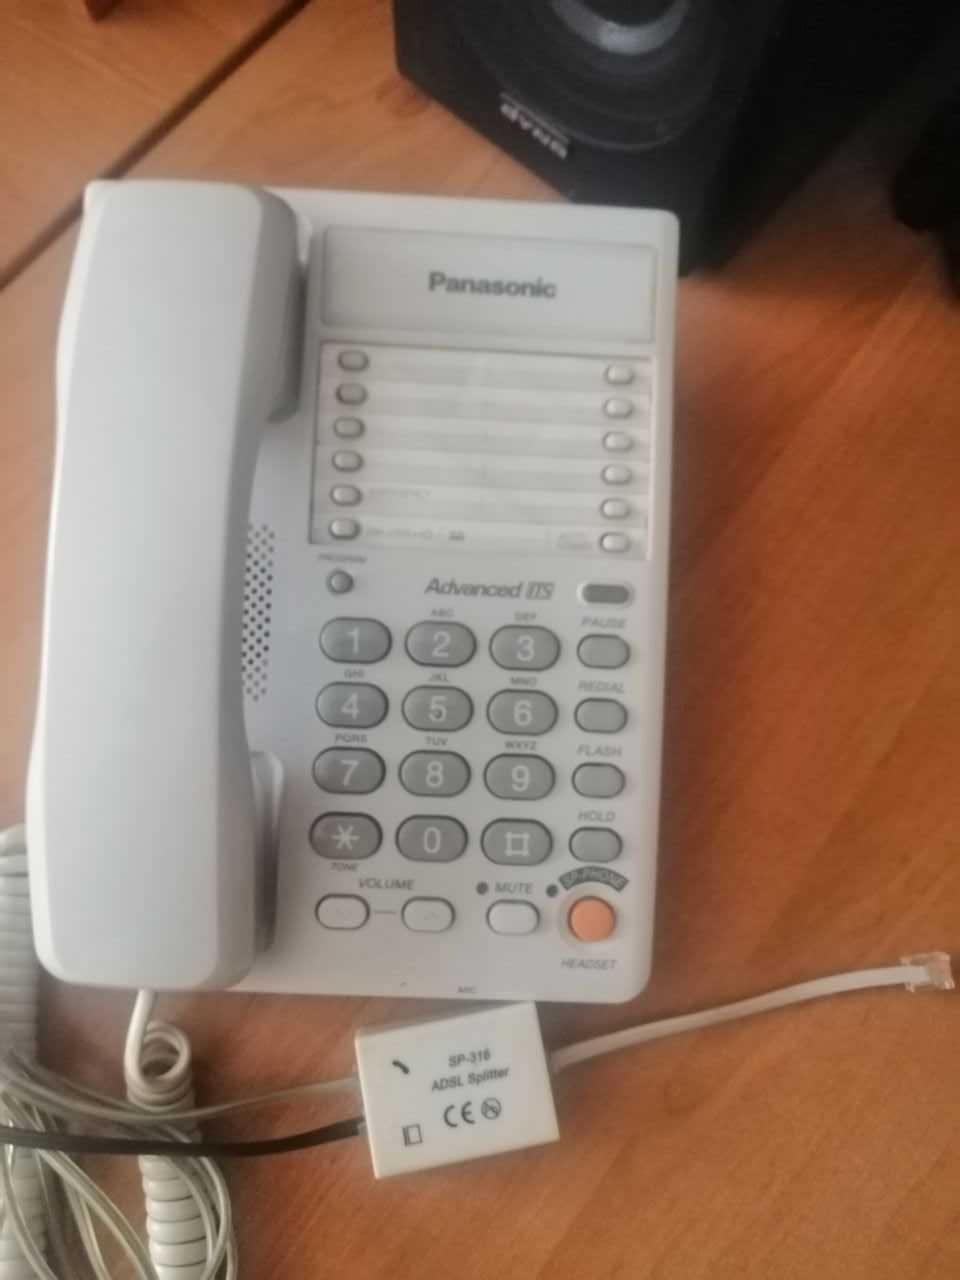 Проводной стационарный телефон Panasonic KX-TS2365RUW. ОРИГИНАЛ.